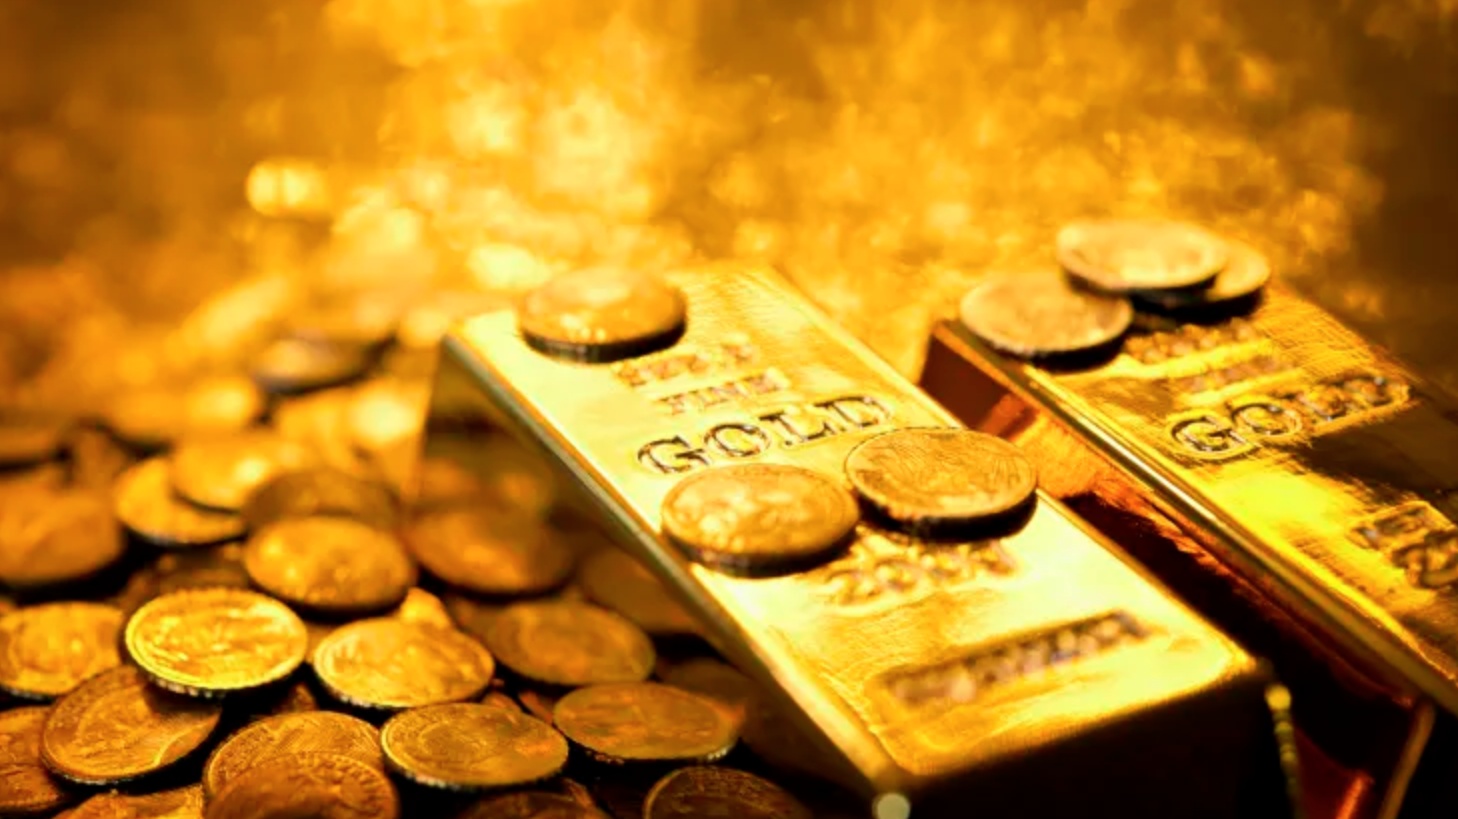 Không để giá vàng ảnh hưởng đến phát triển kinh tế